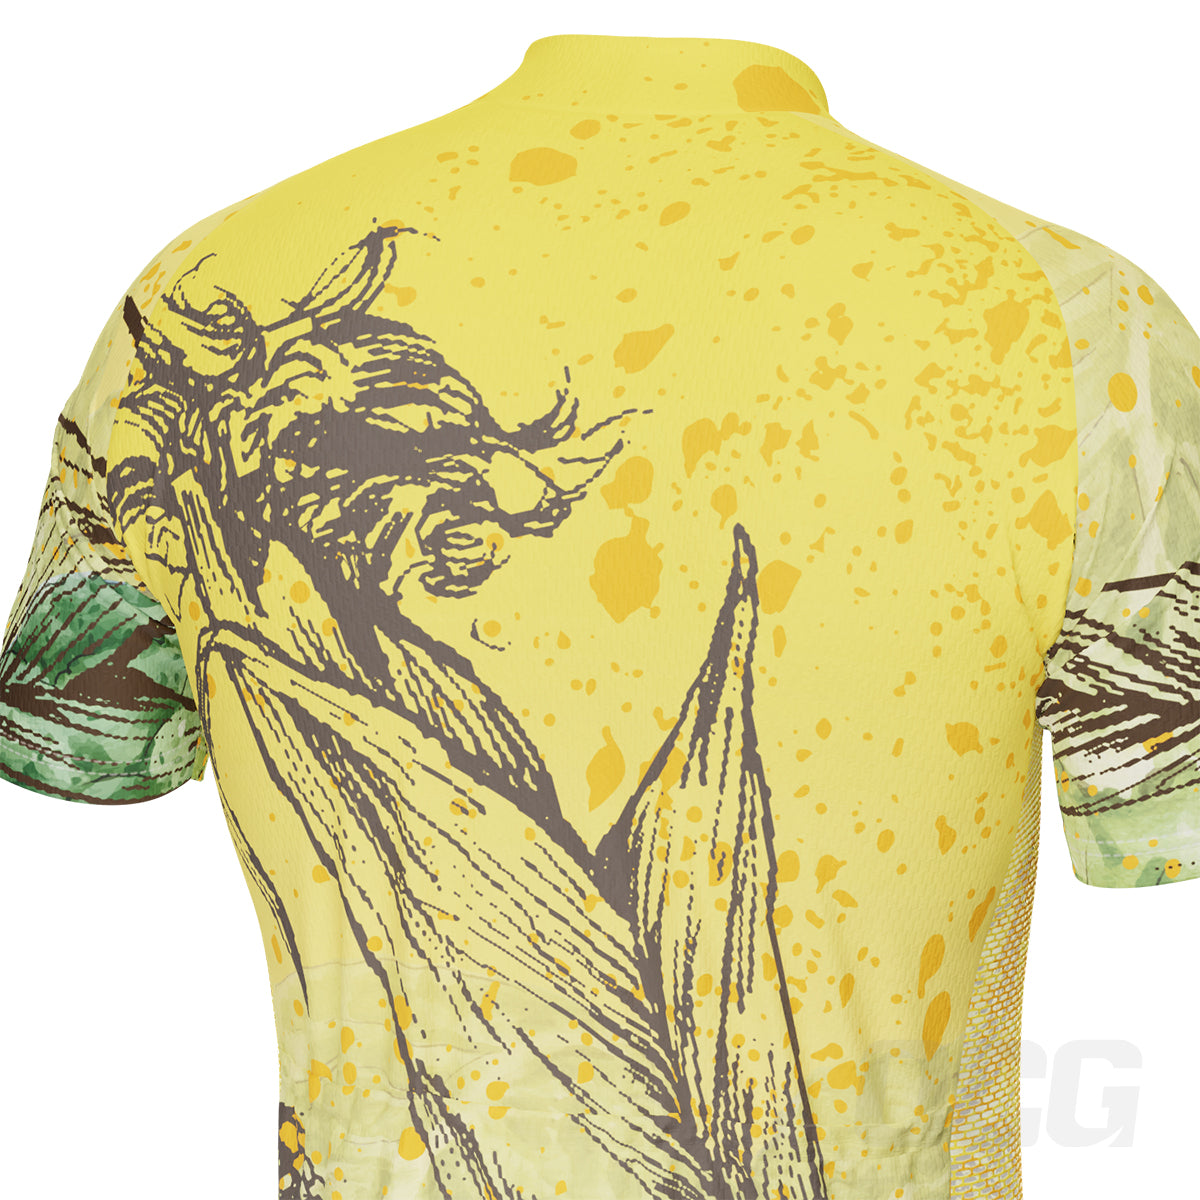 Men's Feeling Corny Short Sleeve Cycling Kit